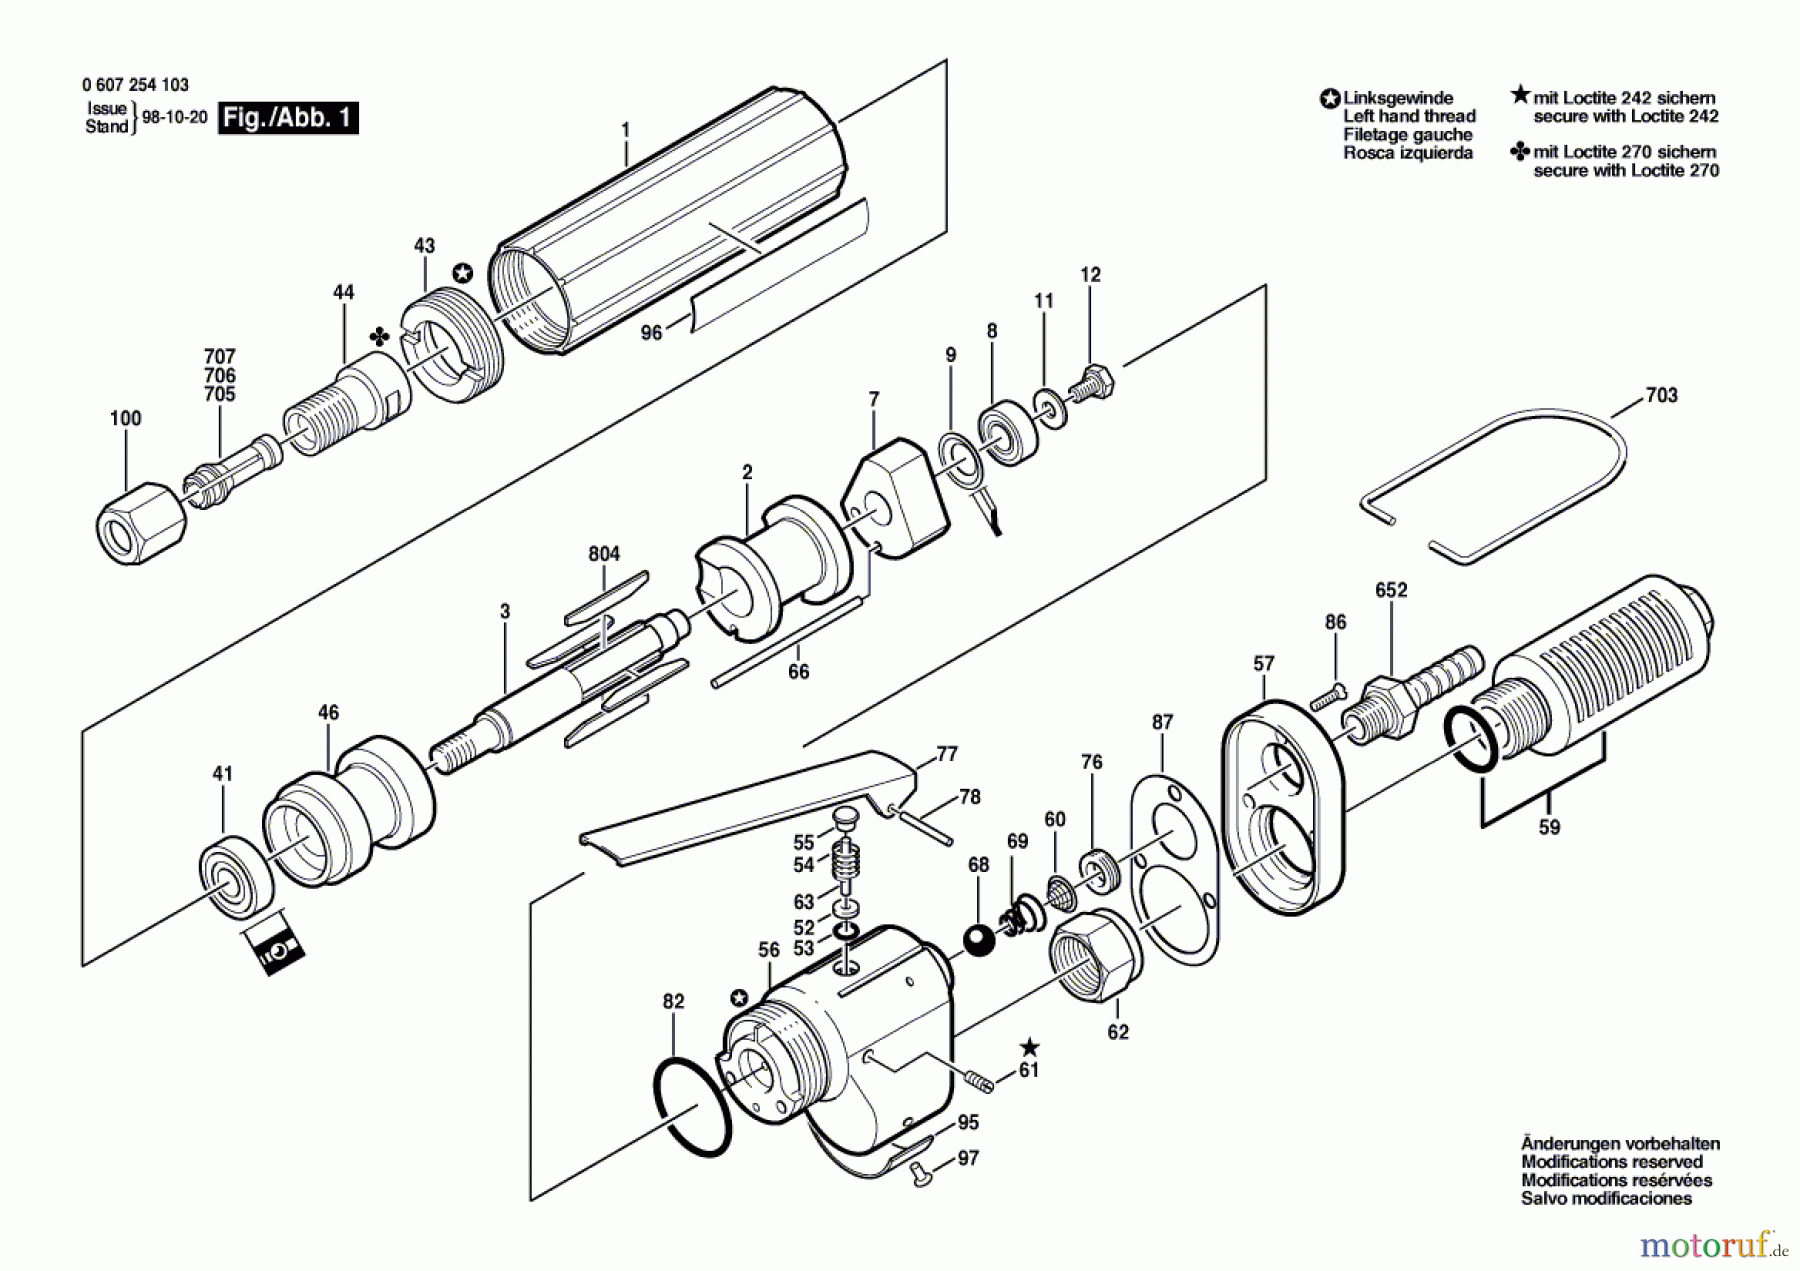  Bosch Werkzeug Pw-Geradschleifer 120 WATT-SERIE Seite 1